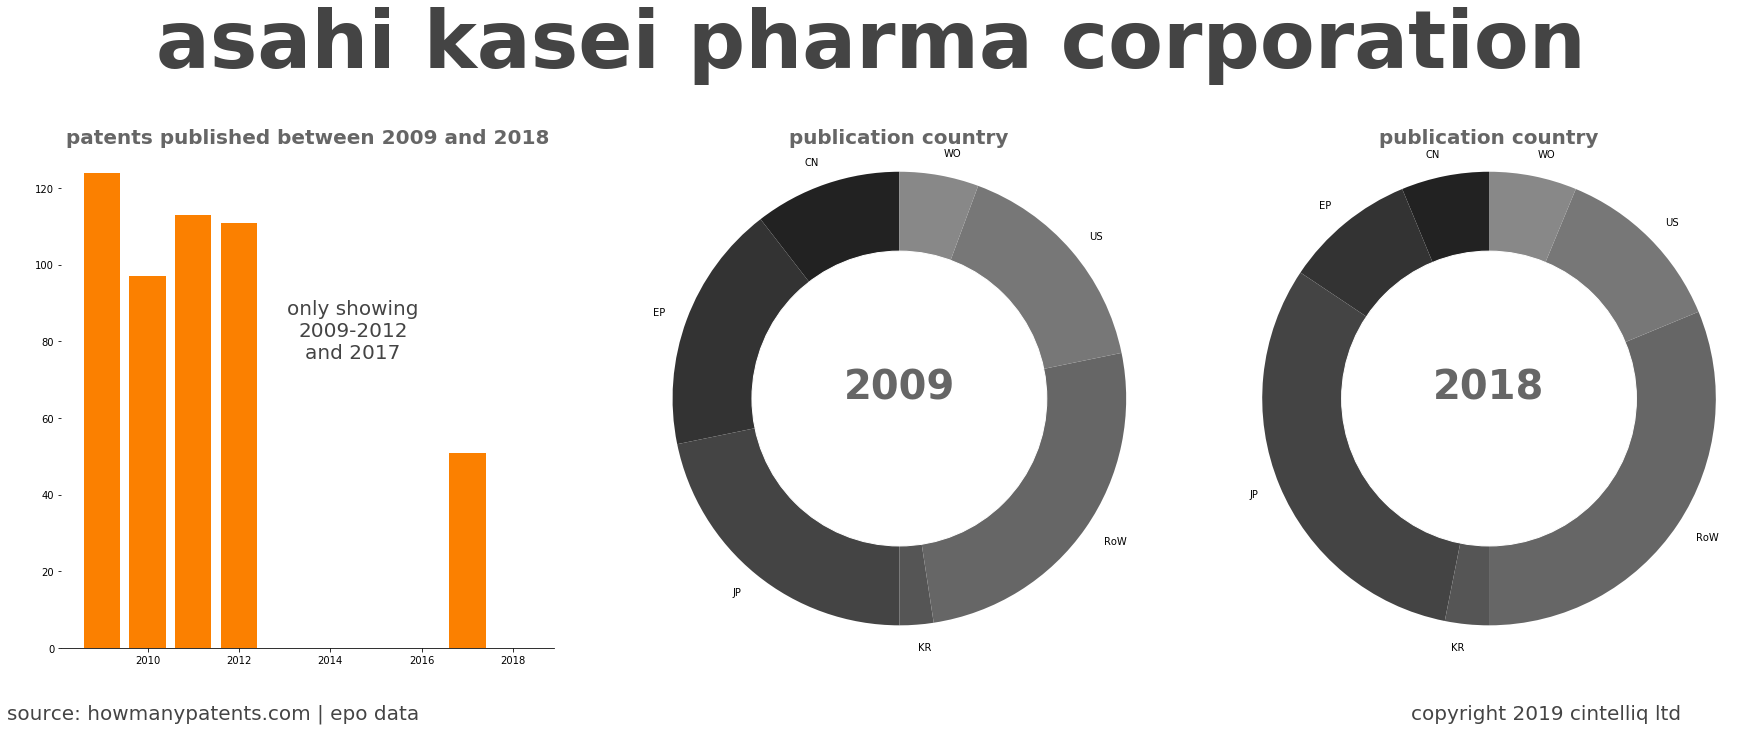 summary of patents for Asahi Kasei Pharma Corporation